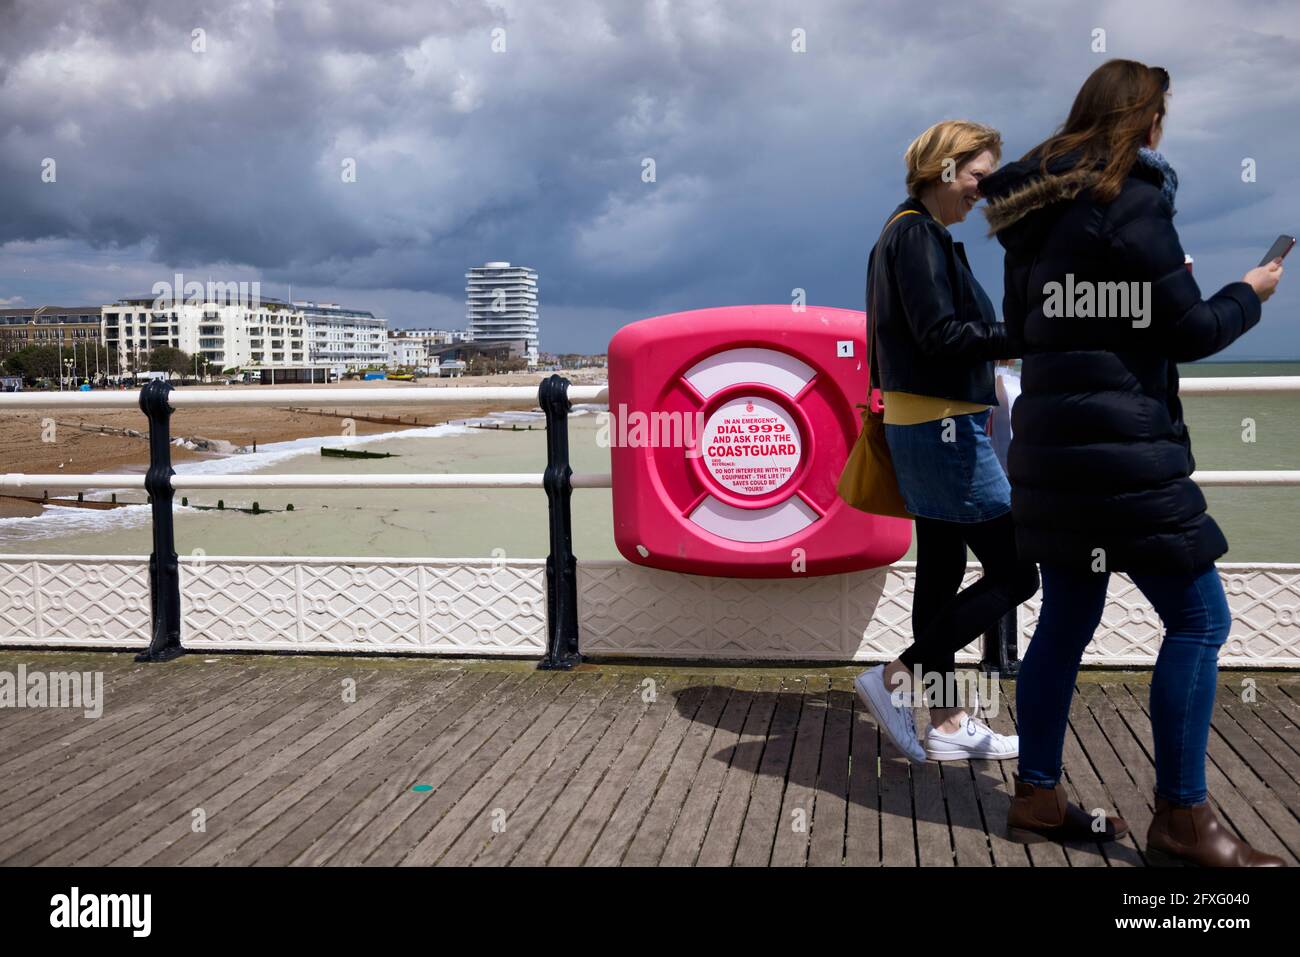 Da sich Gewitterwolken sammeln und eine Schwimmerin in der Nähe von Schwierigkeiten berichtet, gehen zwei Frauen ohne einen Blick an einem Rettungsring vorbei, mit Blick auf das Mobiltelefon. Stockfoto